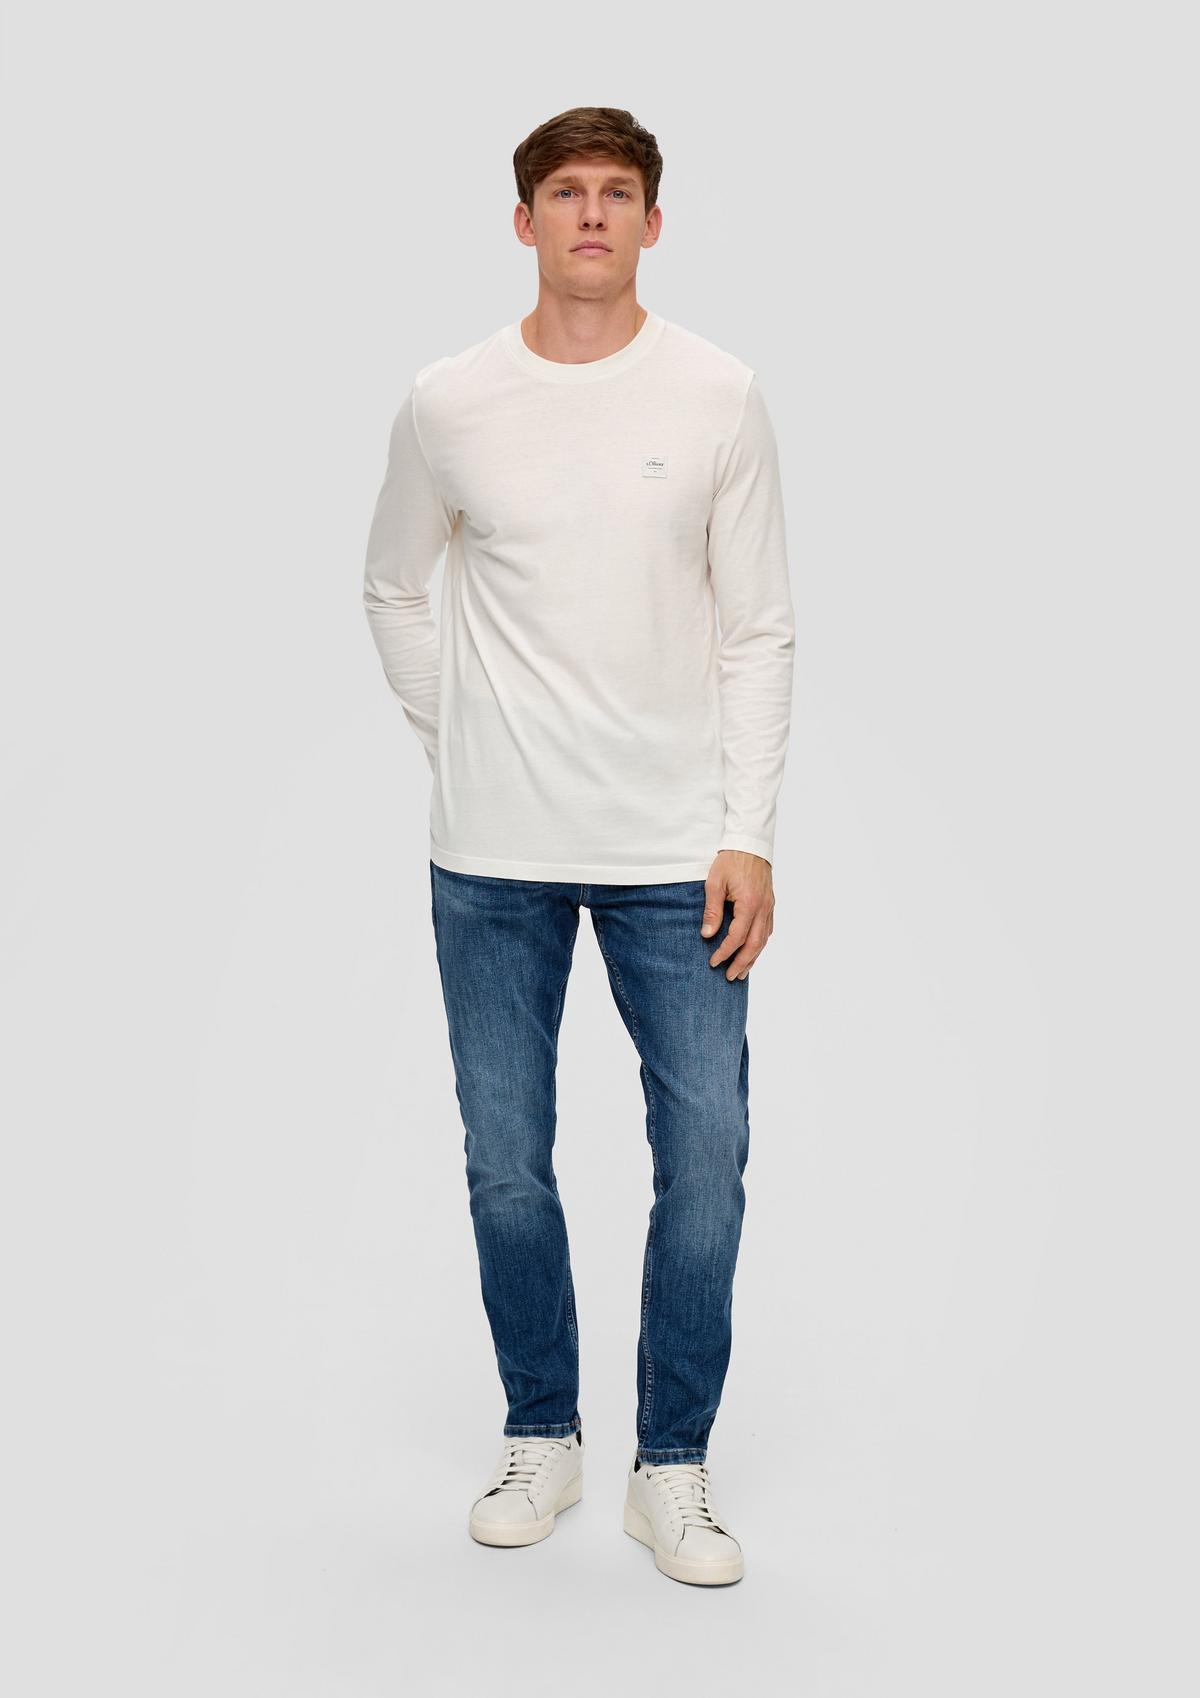 s.Oliver Jeans hlače/kroj Regular Fit/High Rise/Tapered Leg